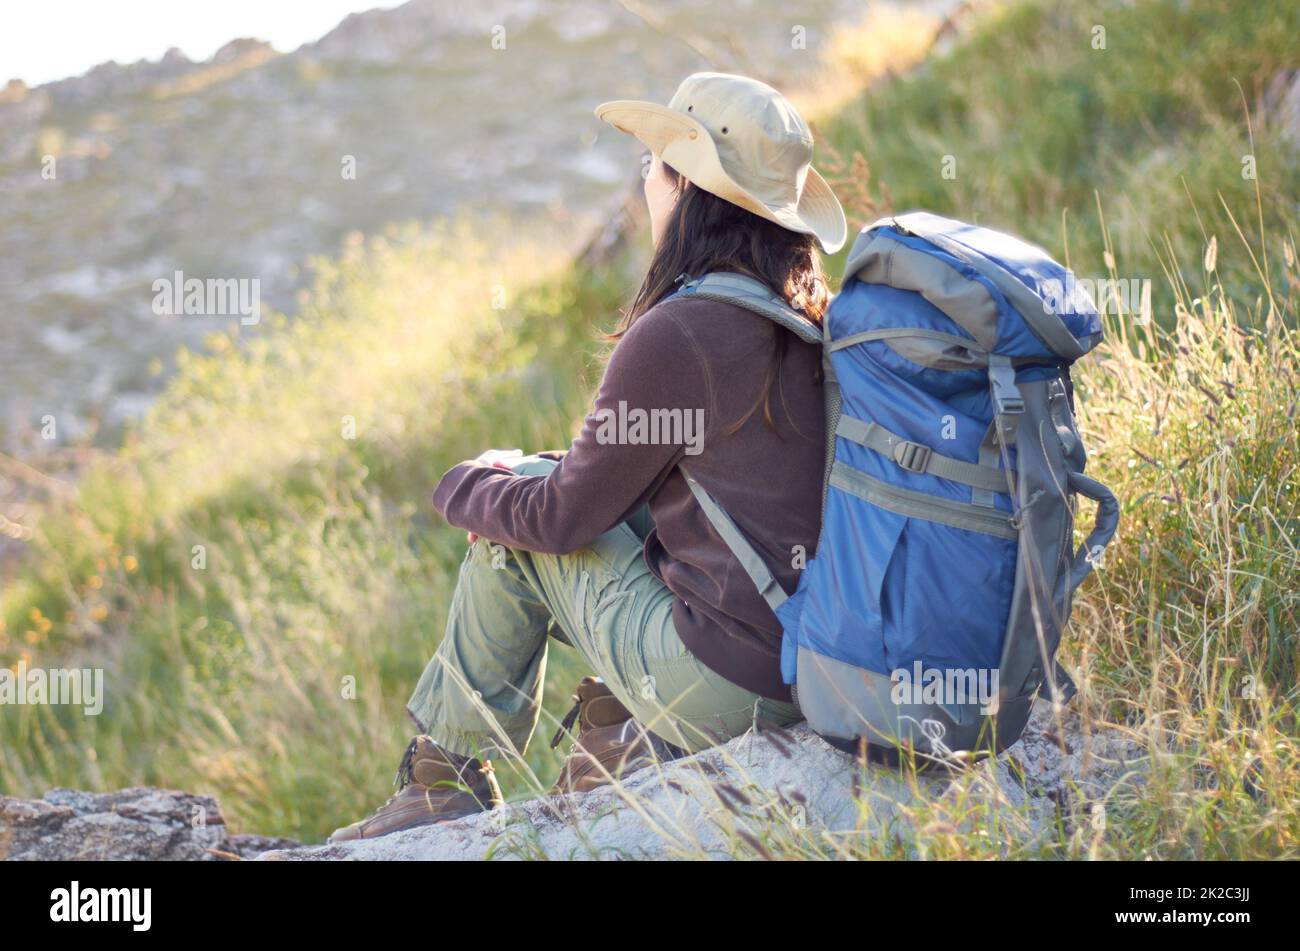 Admirez les magnifiques paysages. Un jeune randonneur avec son sac à dos qui regarde le paysage. Banque D'Images